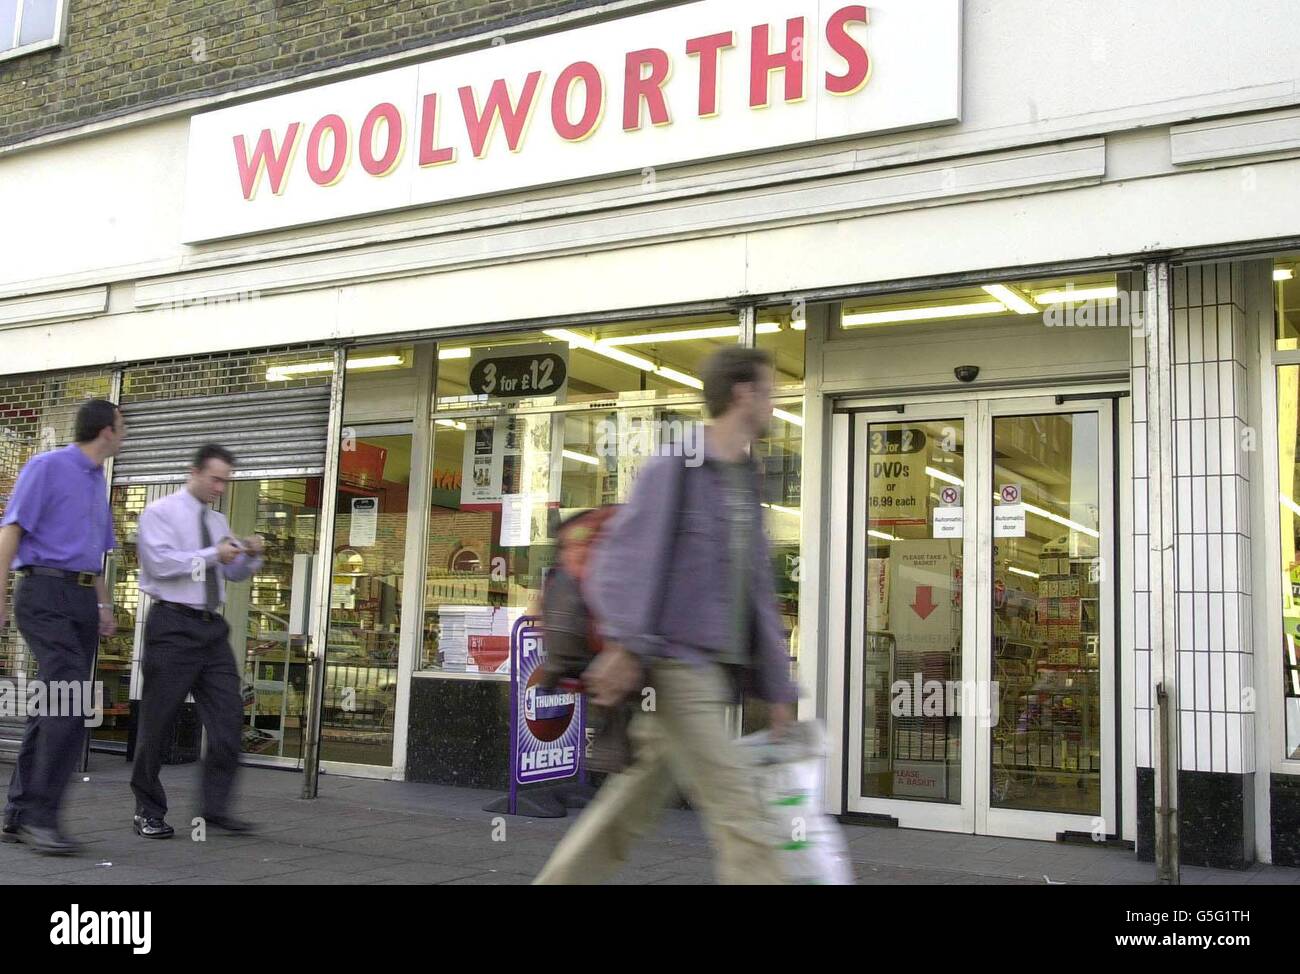 Das Woolworths-Geschäft in der Bethnal Green Road, East London. Es wurde bekannt gegeben, dass Aktien im High Street Store zum ersten Mal seit 1982 nachliegen. 27/03/02 : Gerald Corbett, der Chef der Hight Street Chain, hat eine Erholung im kommenden Jahr prognostiziert, nachdem die Gewinne fallen sehen. Das Unternehmen machte einen Gewinn von 46.4 Millionen im Vergleich zu einem Gewinn von 54.3 Millionen im vergangenen Jahr. Aber der ehemalige Railtrack-Chef sagte, die Kette sei jetzt stabilisiert, mit Schulden heruntergefahren und die Rekrutierung eines stärkeren Management-Teams. 08/09/04: Woolworths sagte, daß es ungefähr zuversichtlich war Stockfoto